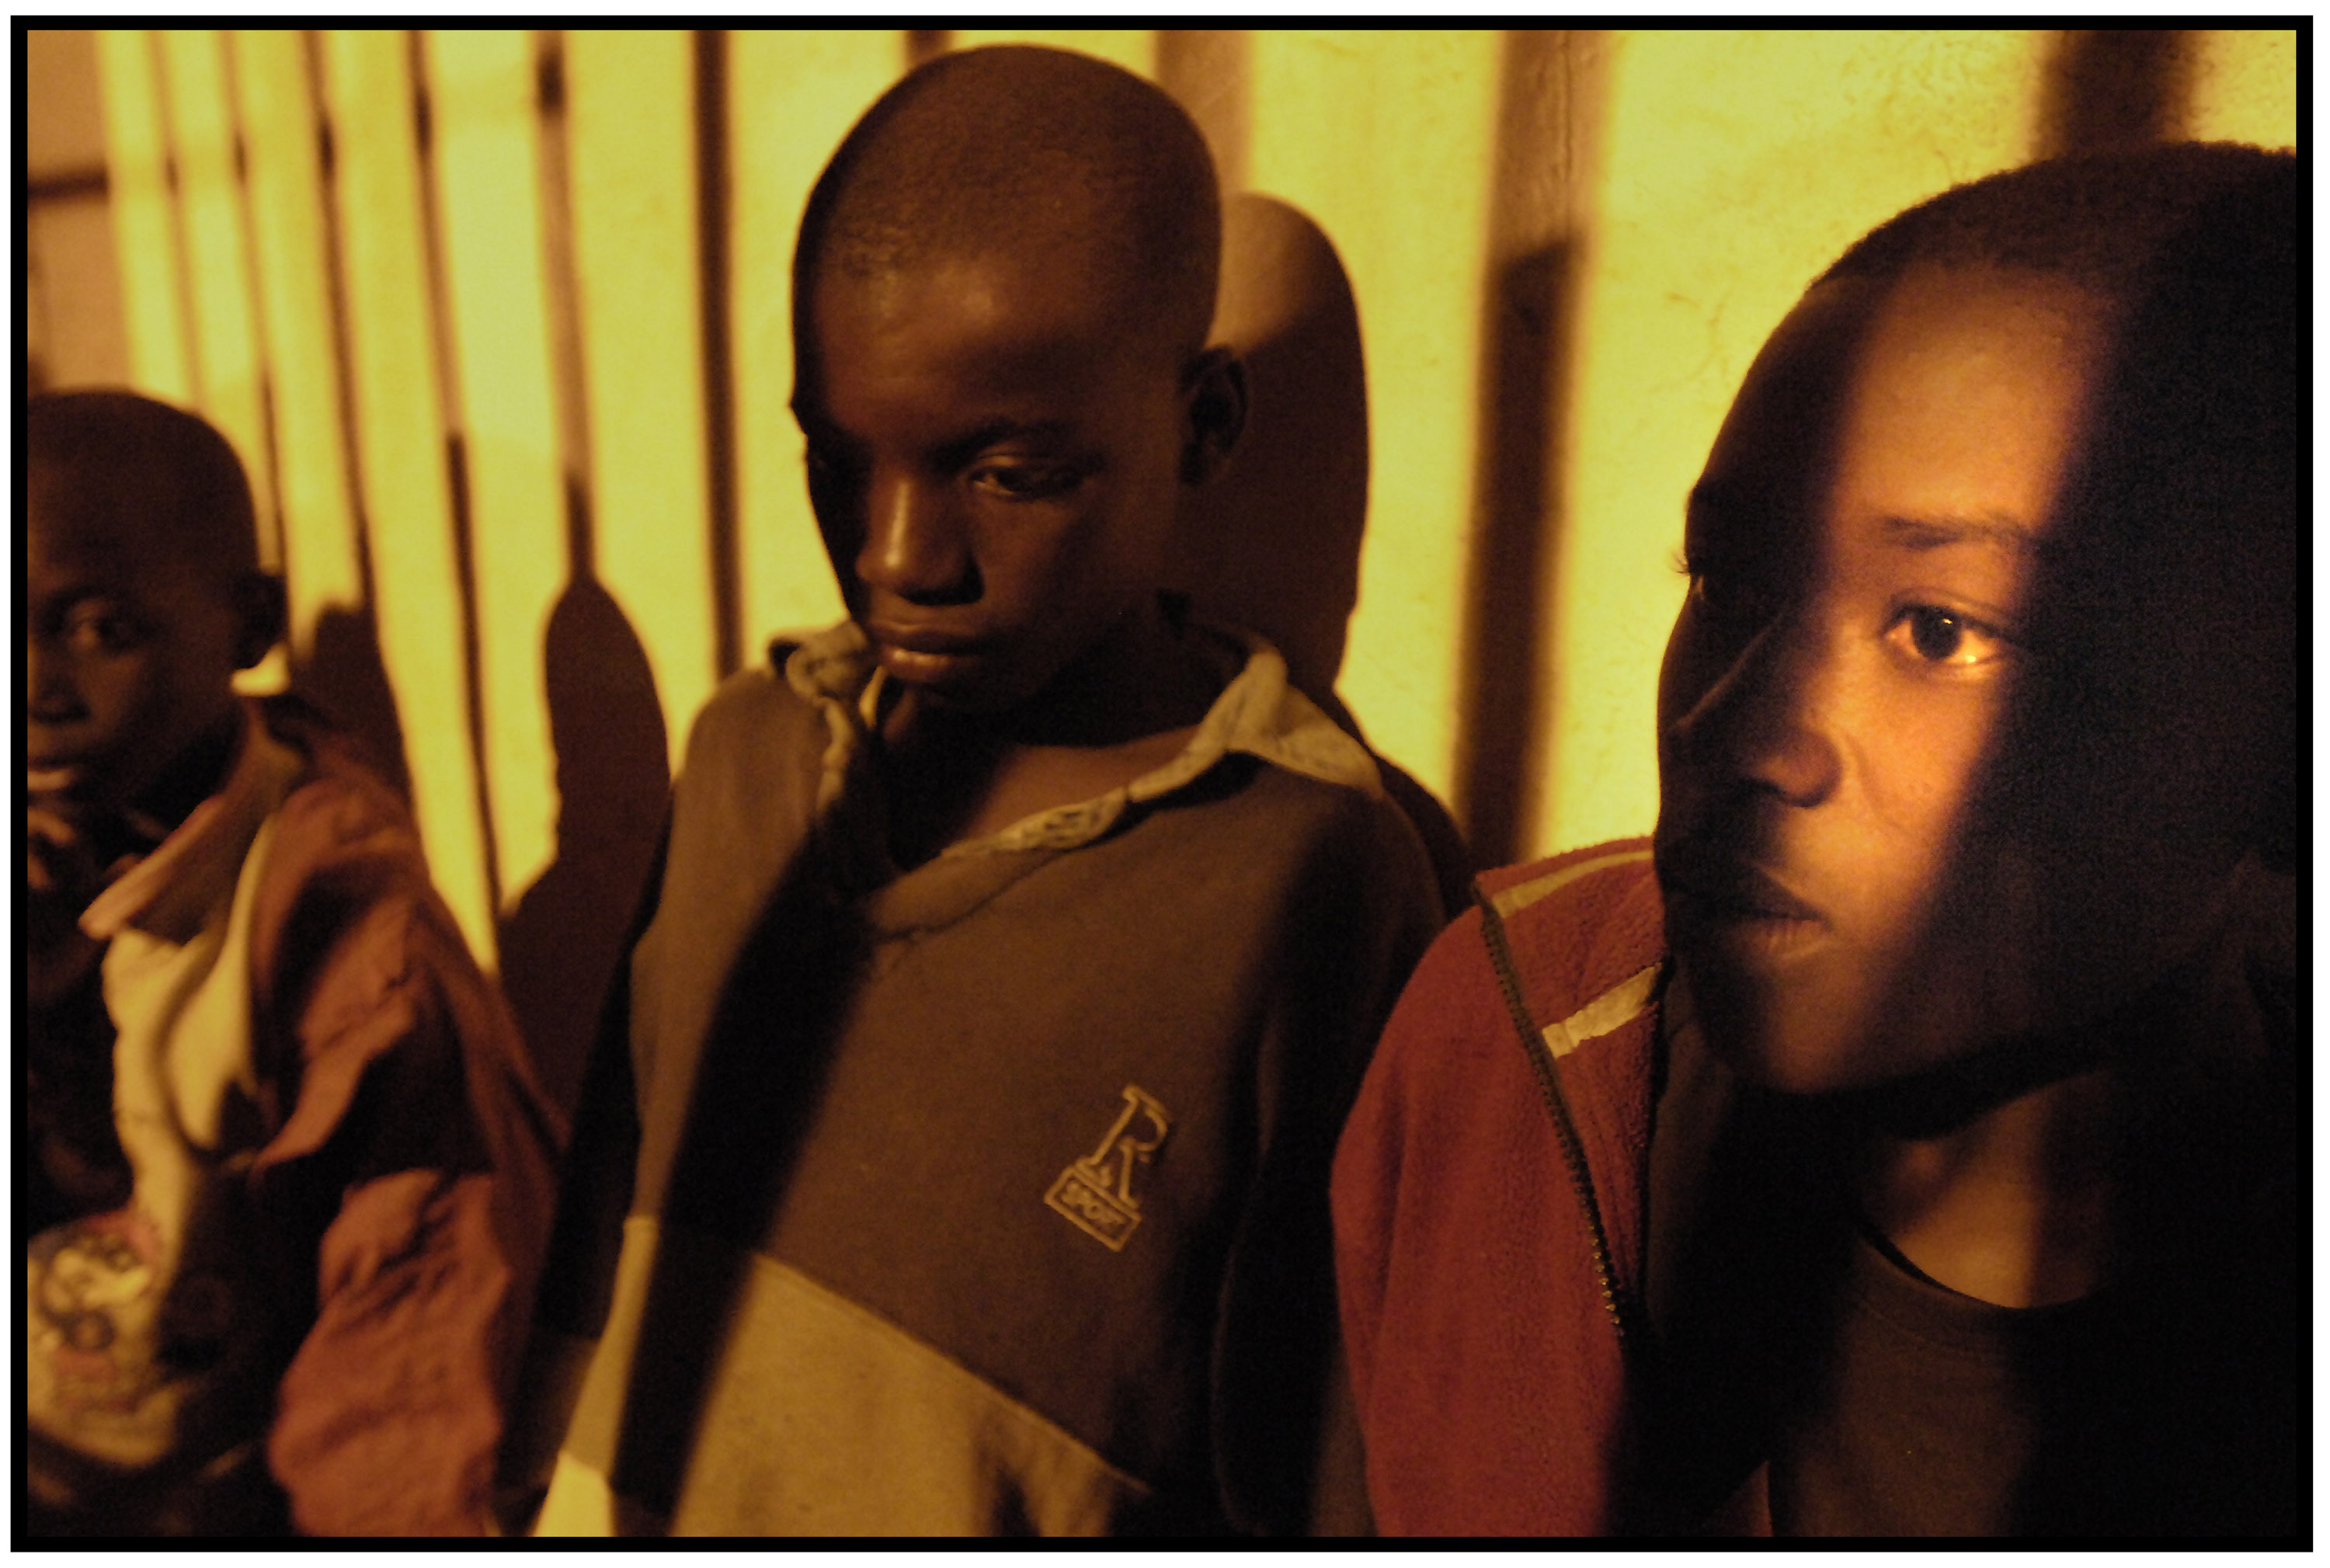 Orphans in Rwanda, photo by Paul C. Brown